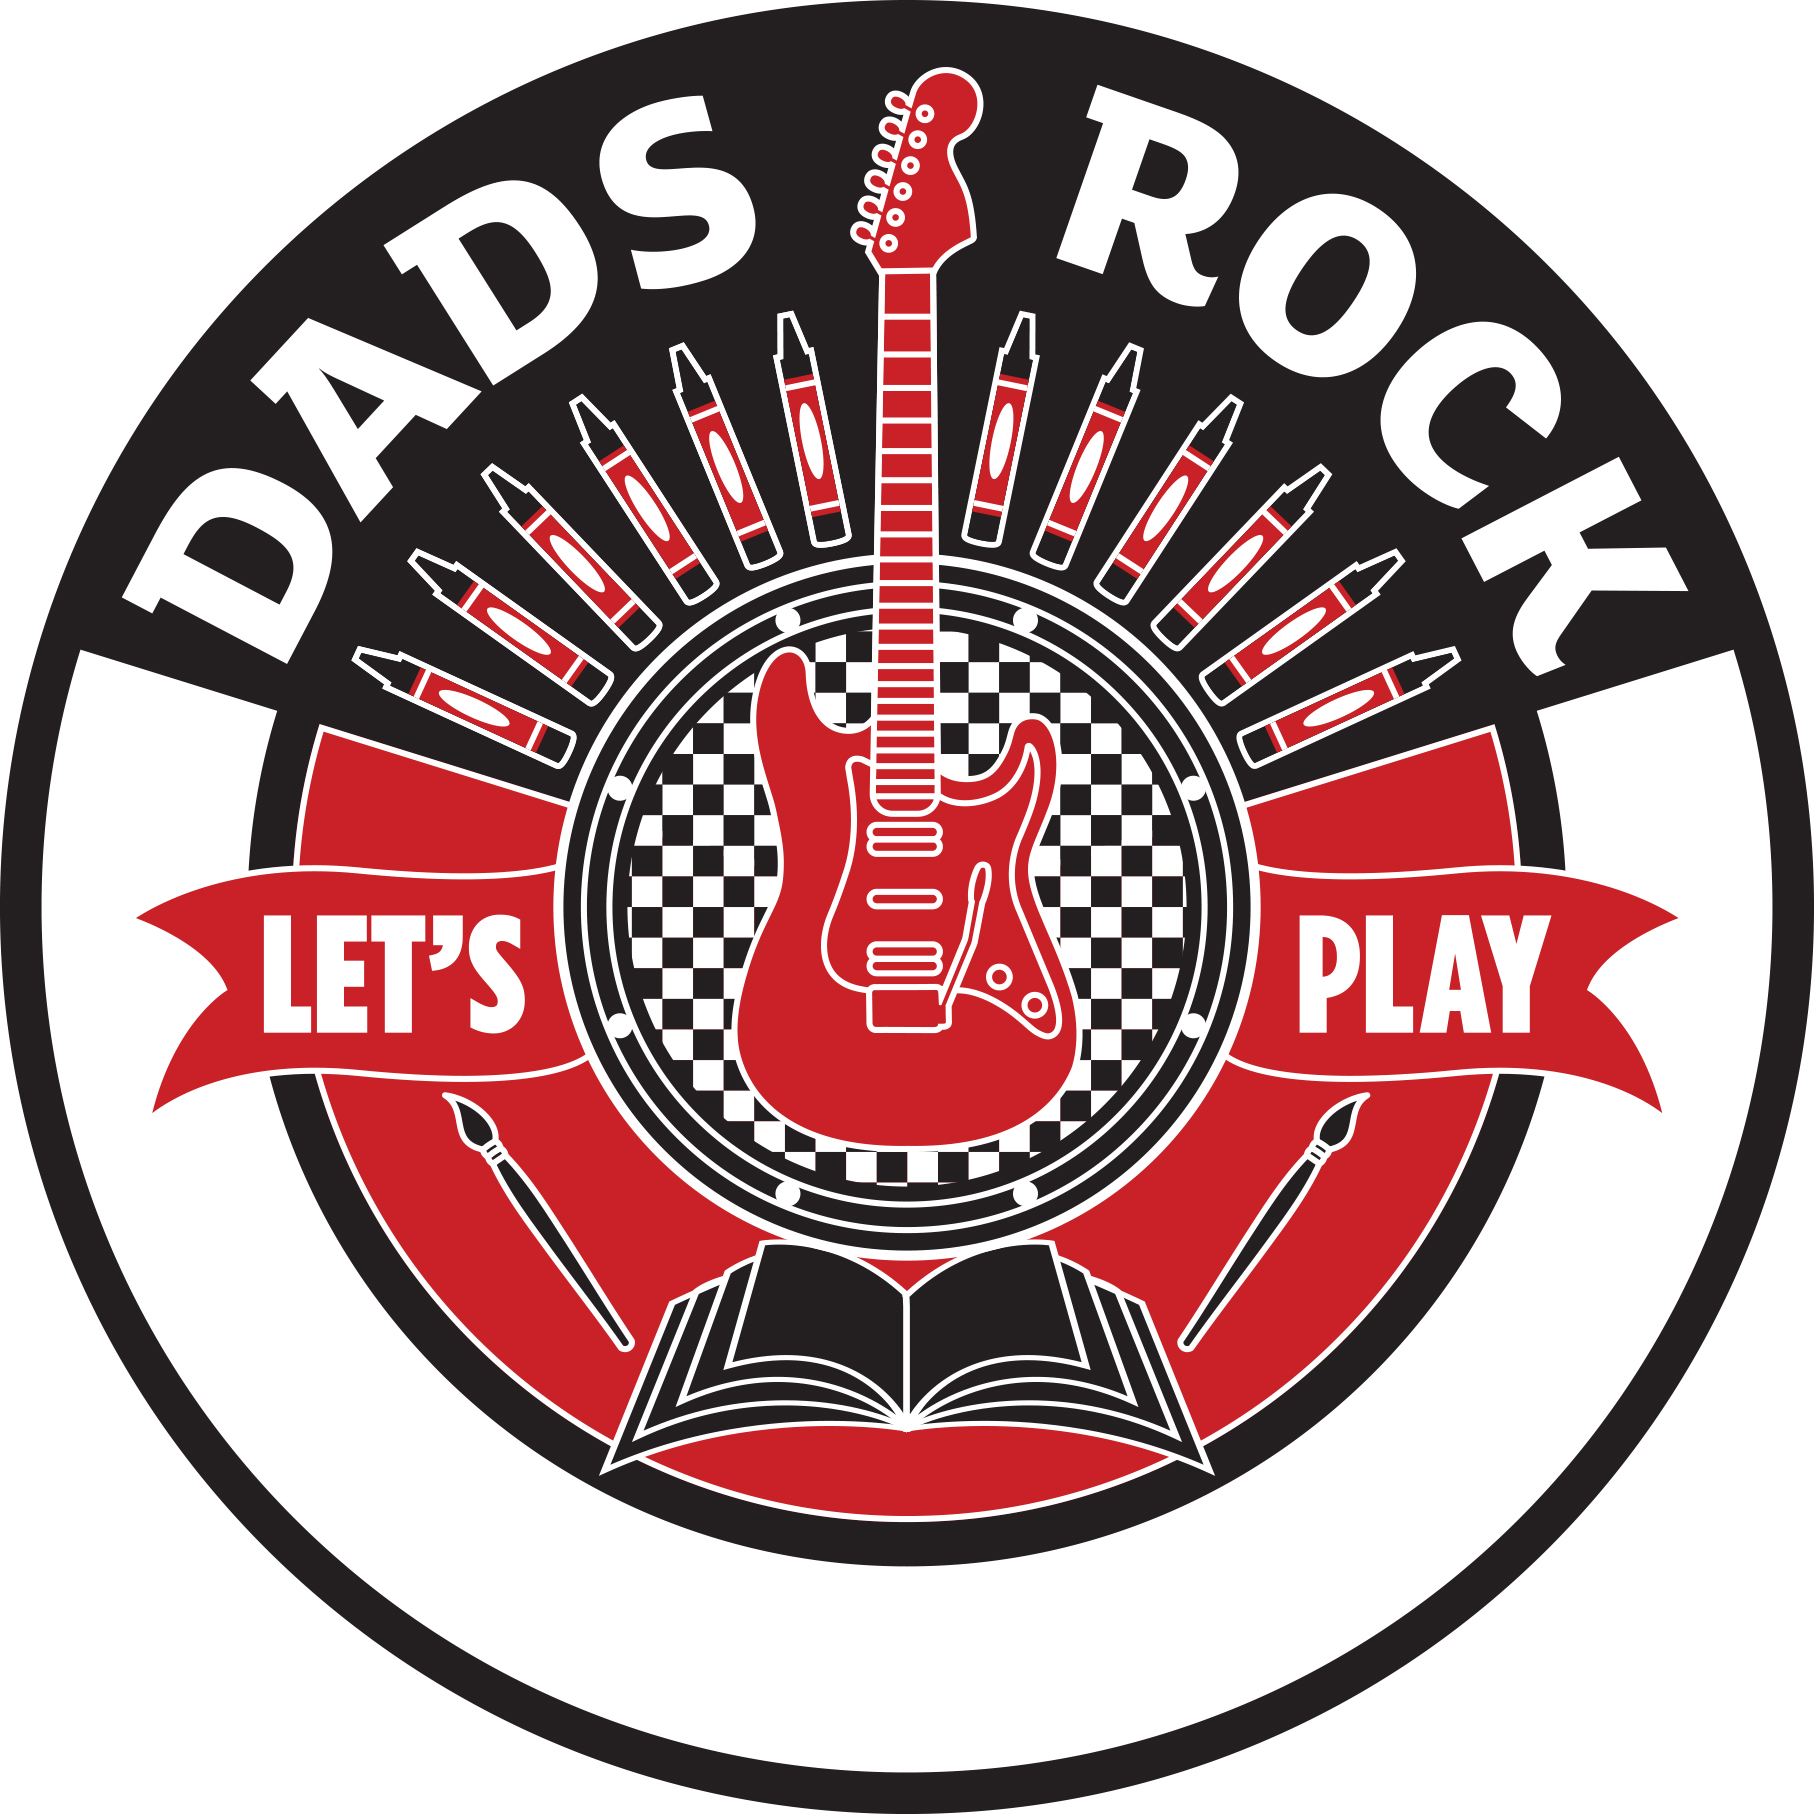 dads rock logo